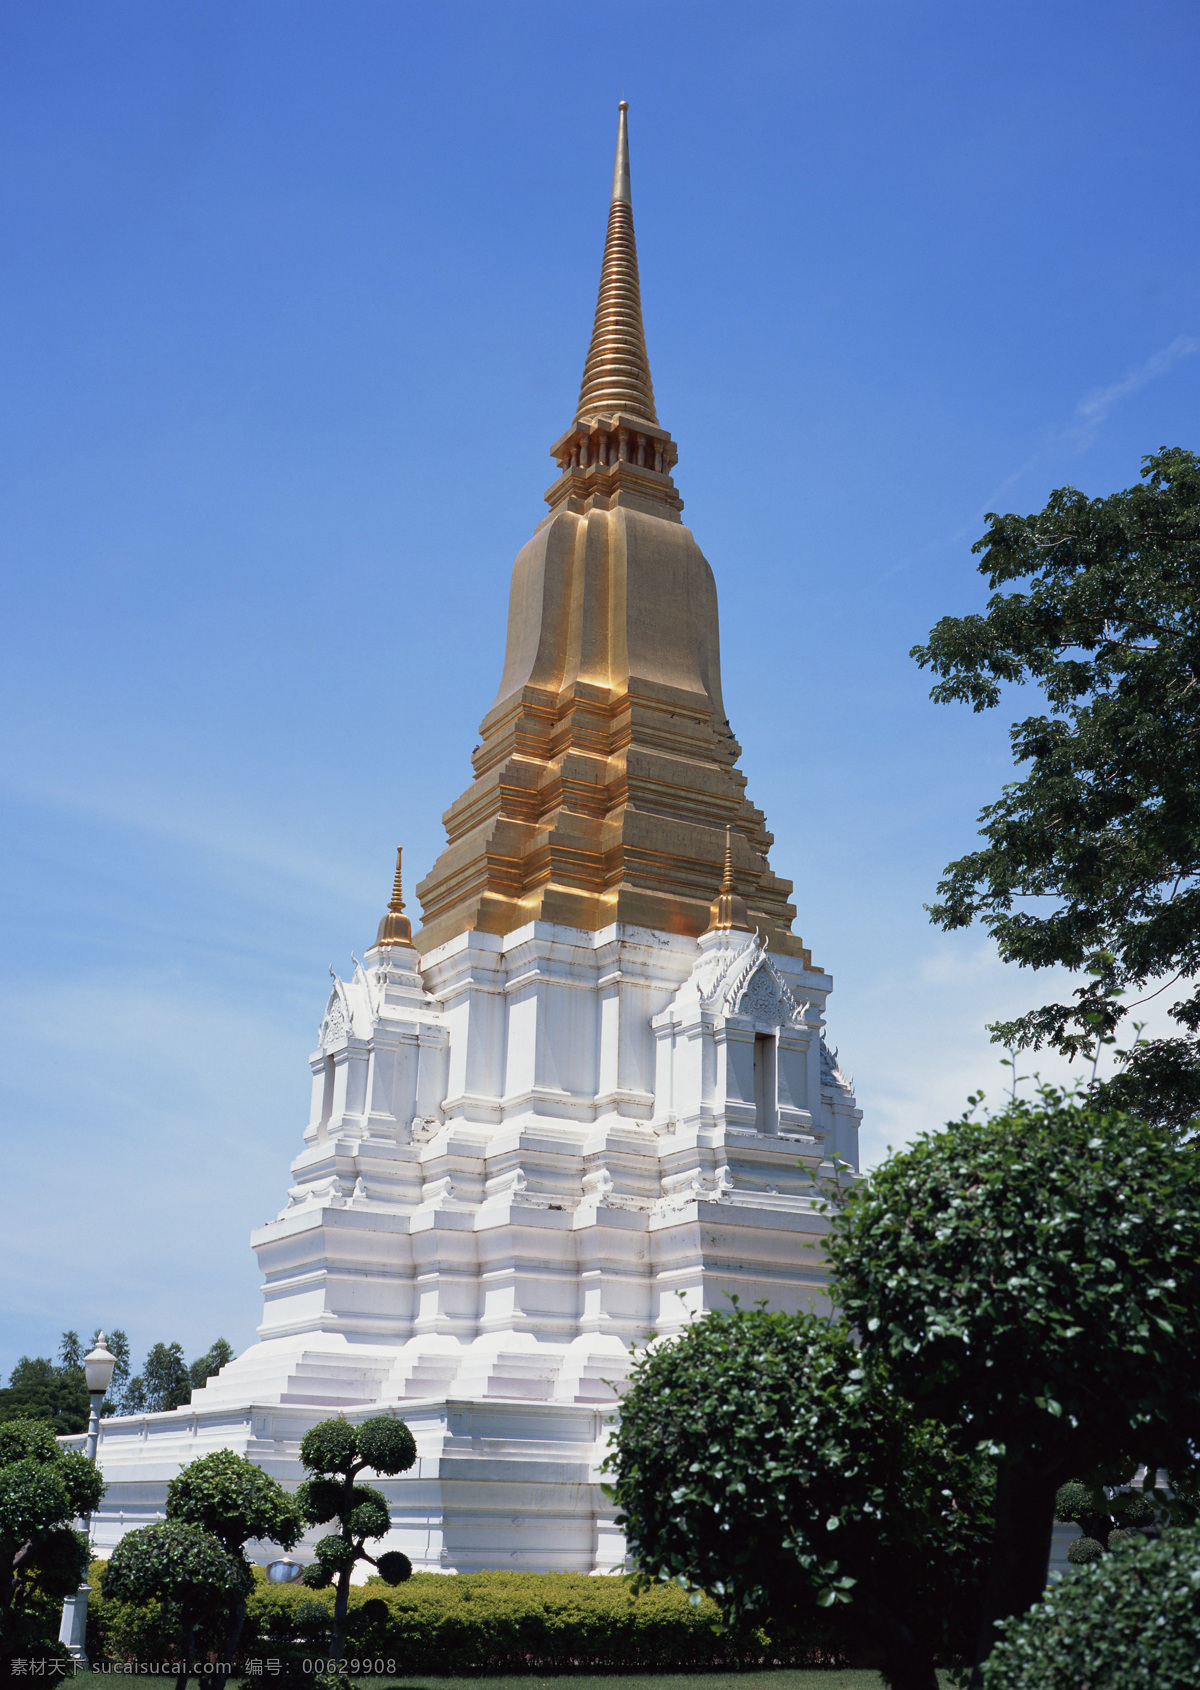 老挝27 老挝 城堡 塔形建筑 蓝天 树 旅游 风景 国内旅游 旅游摄影